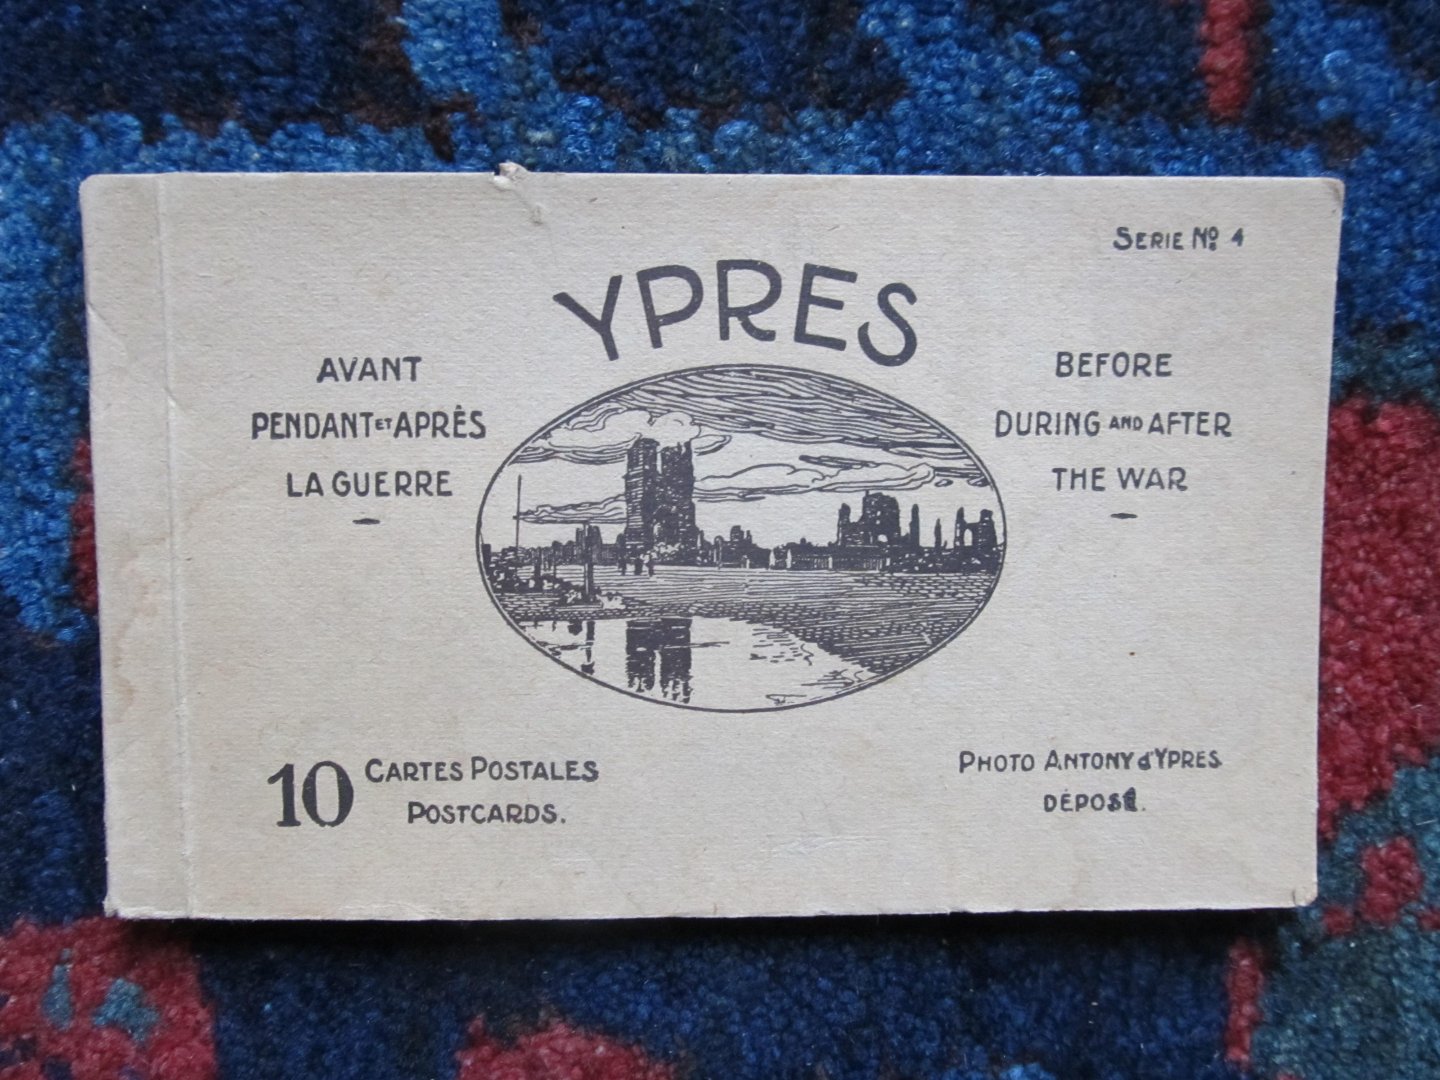  - YPRES avant, pendant et après la guerre / before, during and after te war. 10 cartes postales / postcards